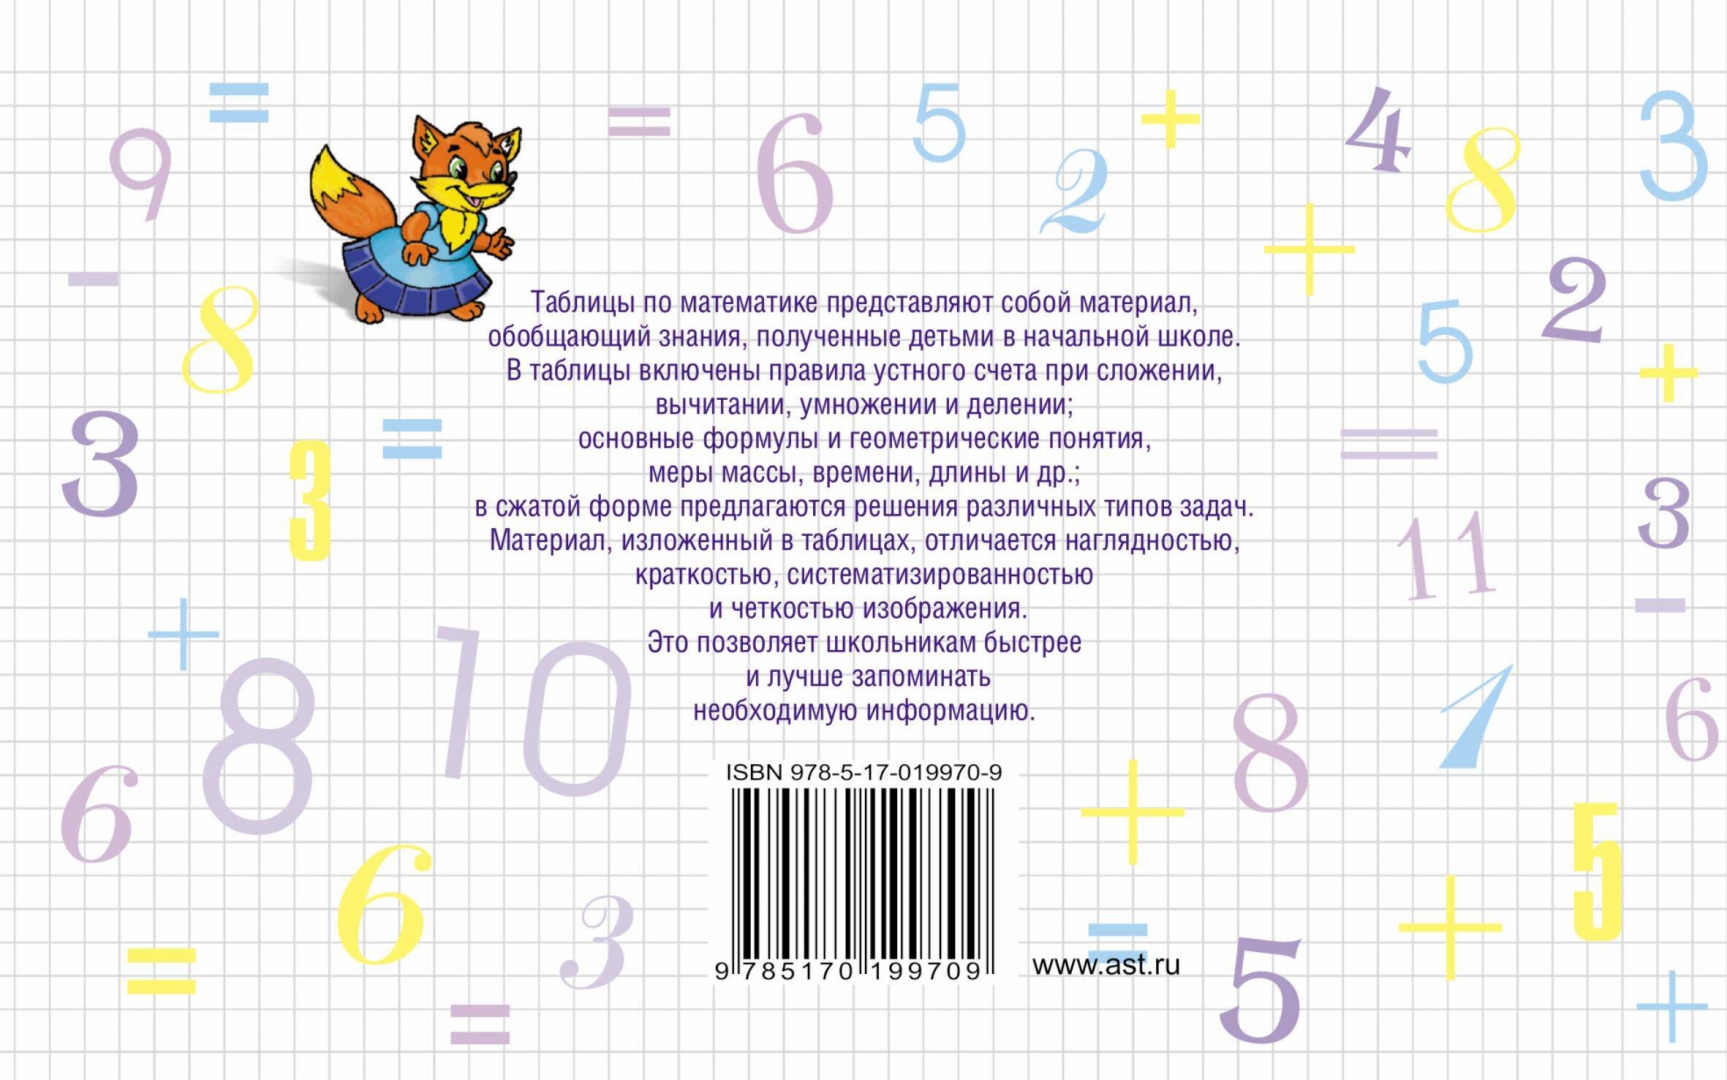 Иллюстрация 1 из 10 для Таблицы по математике для начальной школы - Узорова, Нефедова | Лабиринт - книги. Источник: Лабиринт